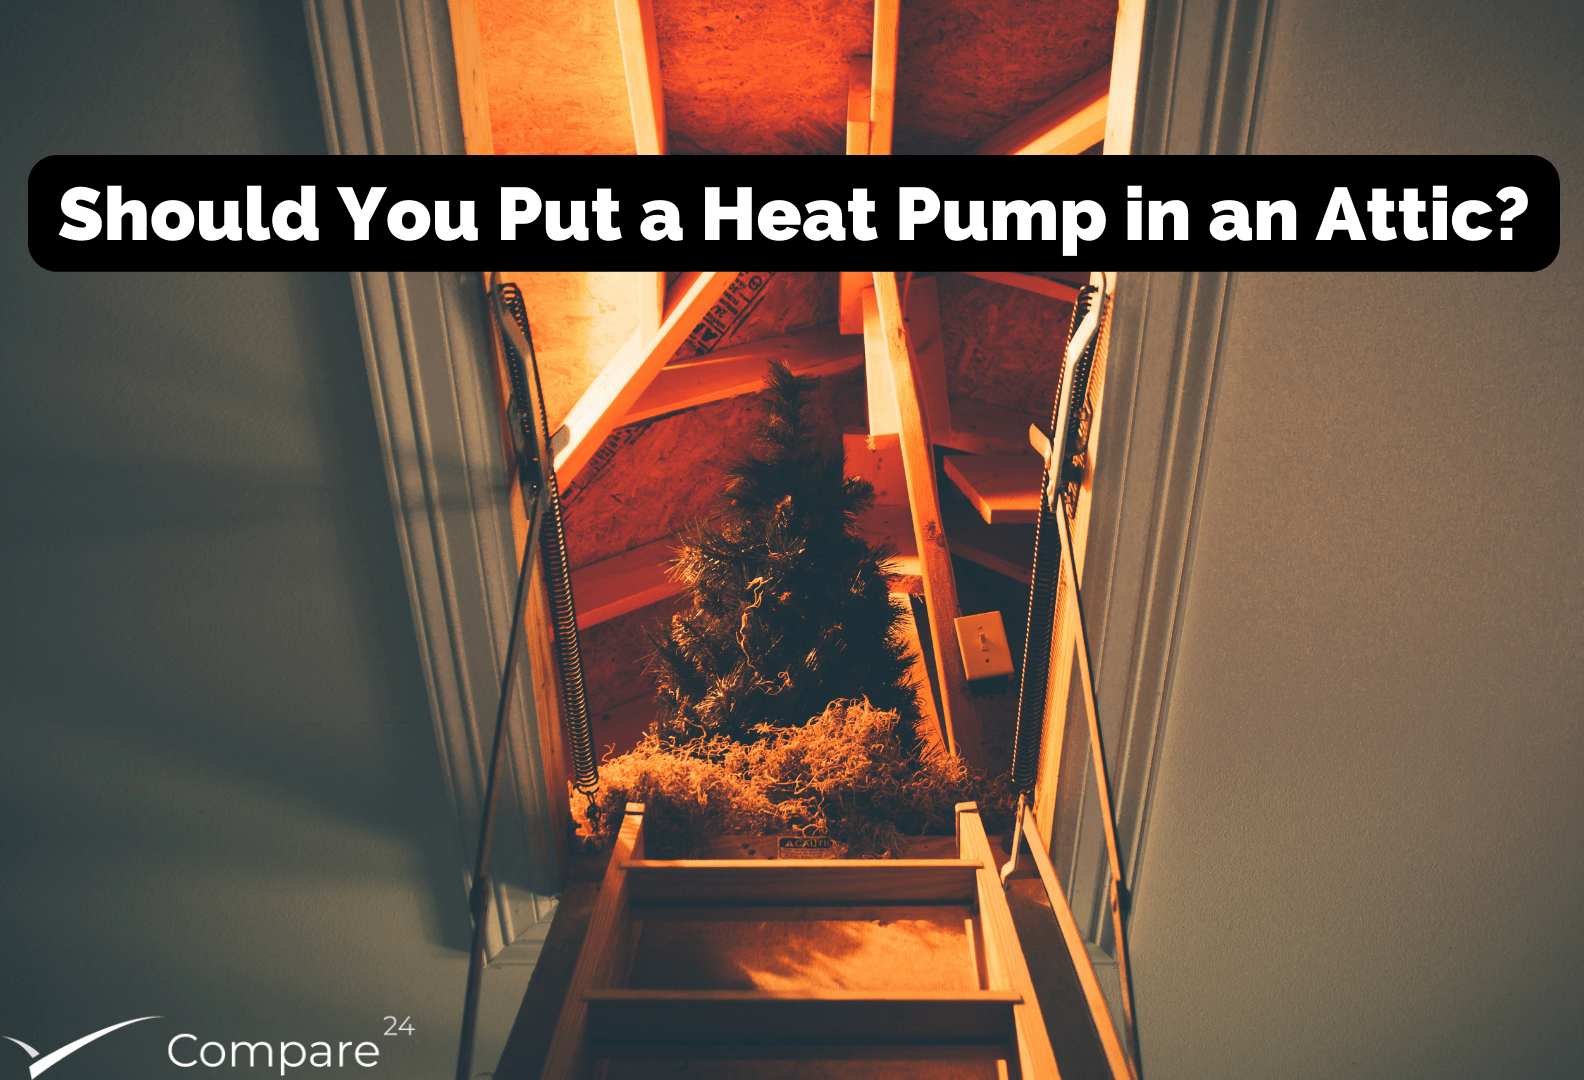 Attic Heat Pump: Should You Put a Heat Pump in an Attic?